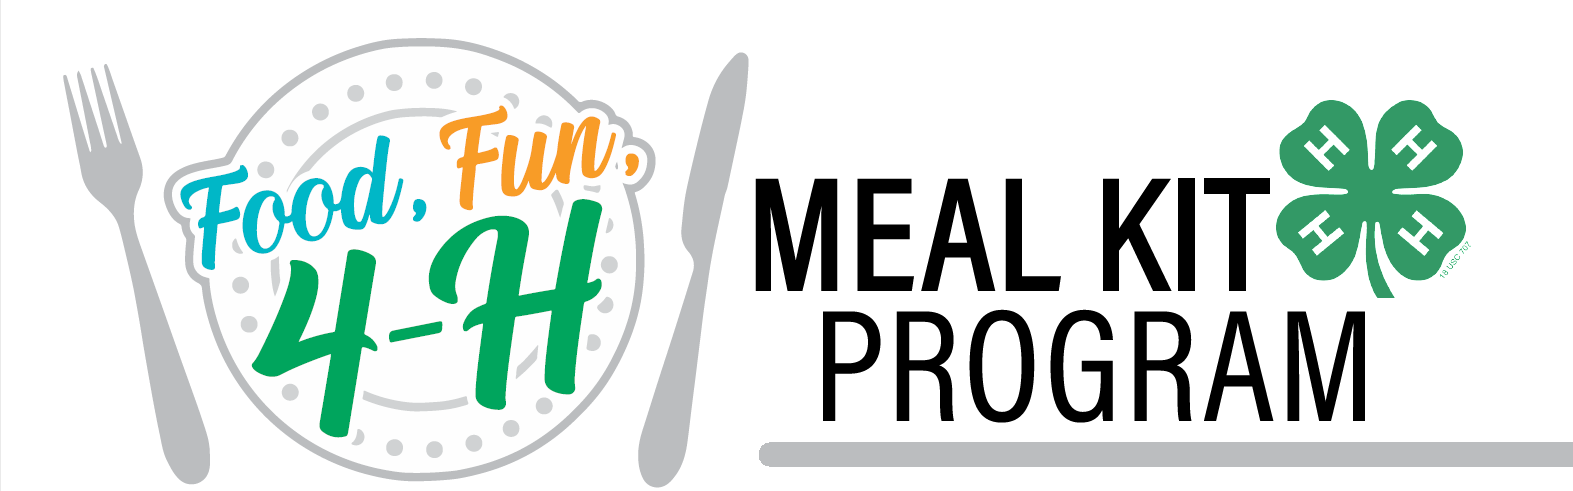 Food, Fun, 4-H: Meal Kit Program